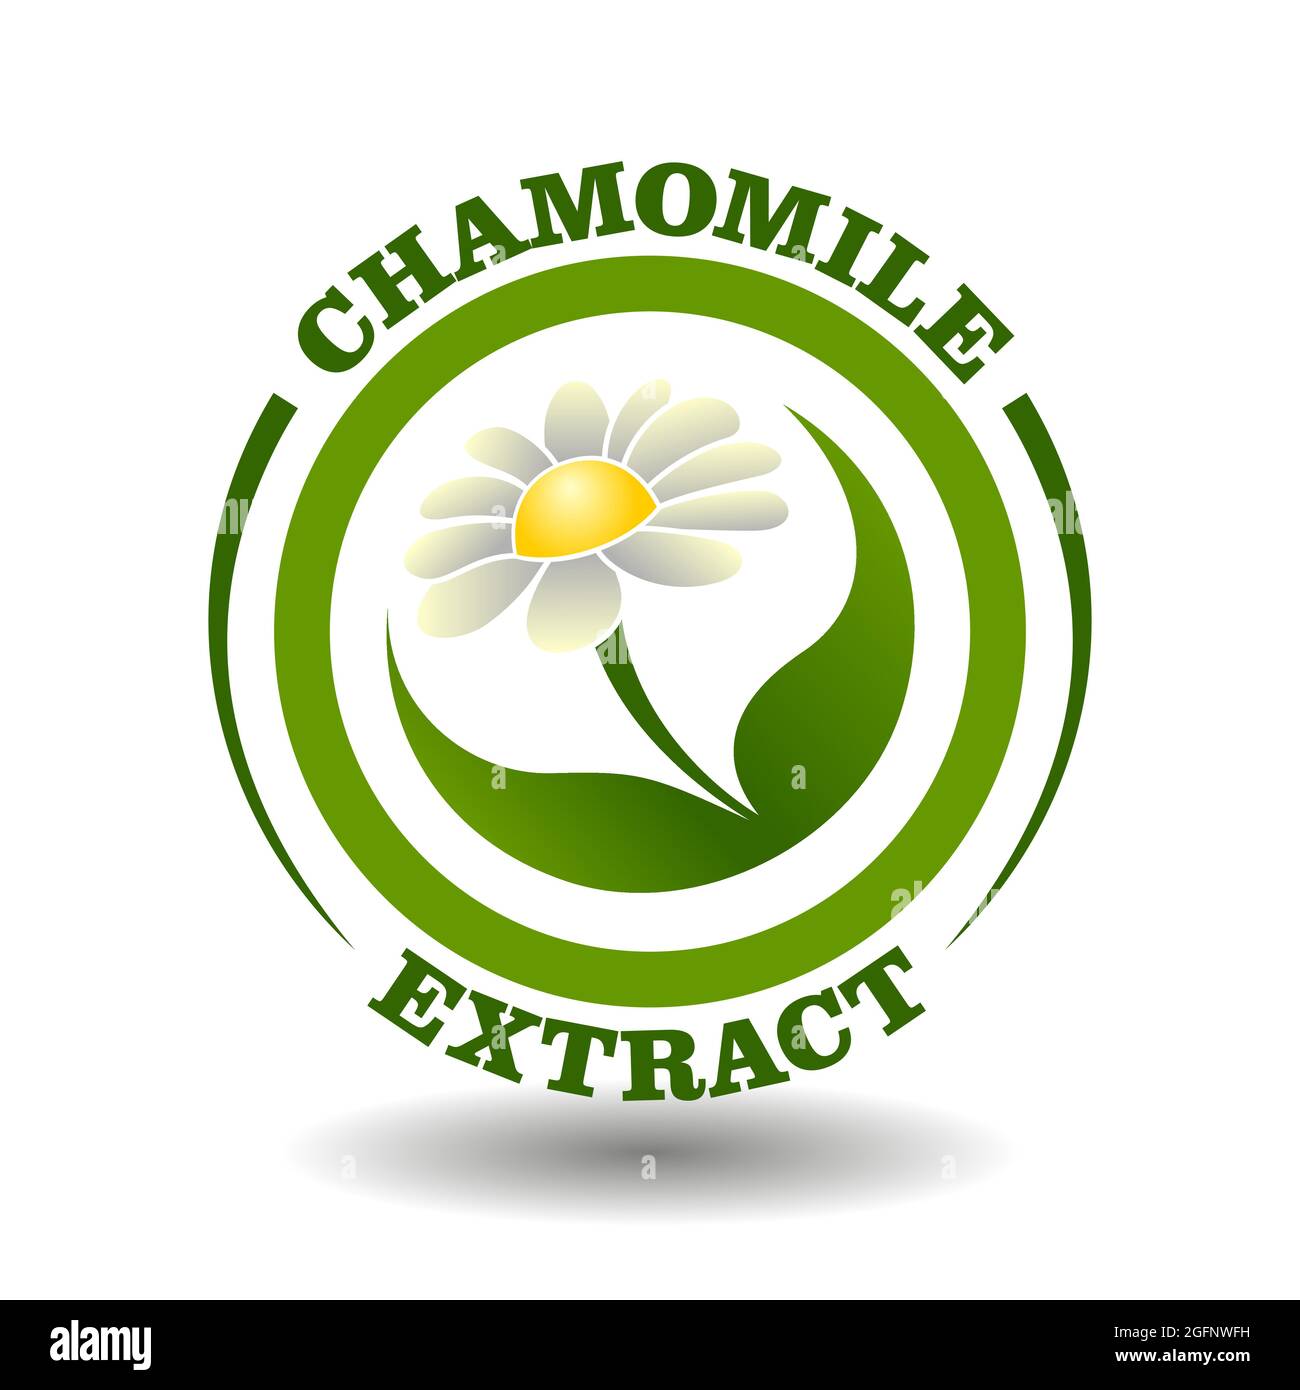 Logo cercle vectoriel extrait de camomille avec fleur blanche Marguerite et symbole de feuilles vertes dans un pictogramme rond pour le signe de cosmétiques biologiques, étiquette d'aliments naturels Illustration de Vecteur